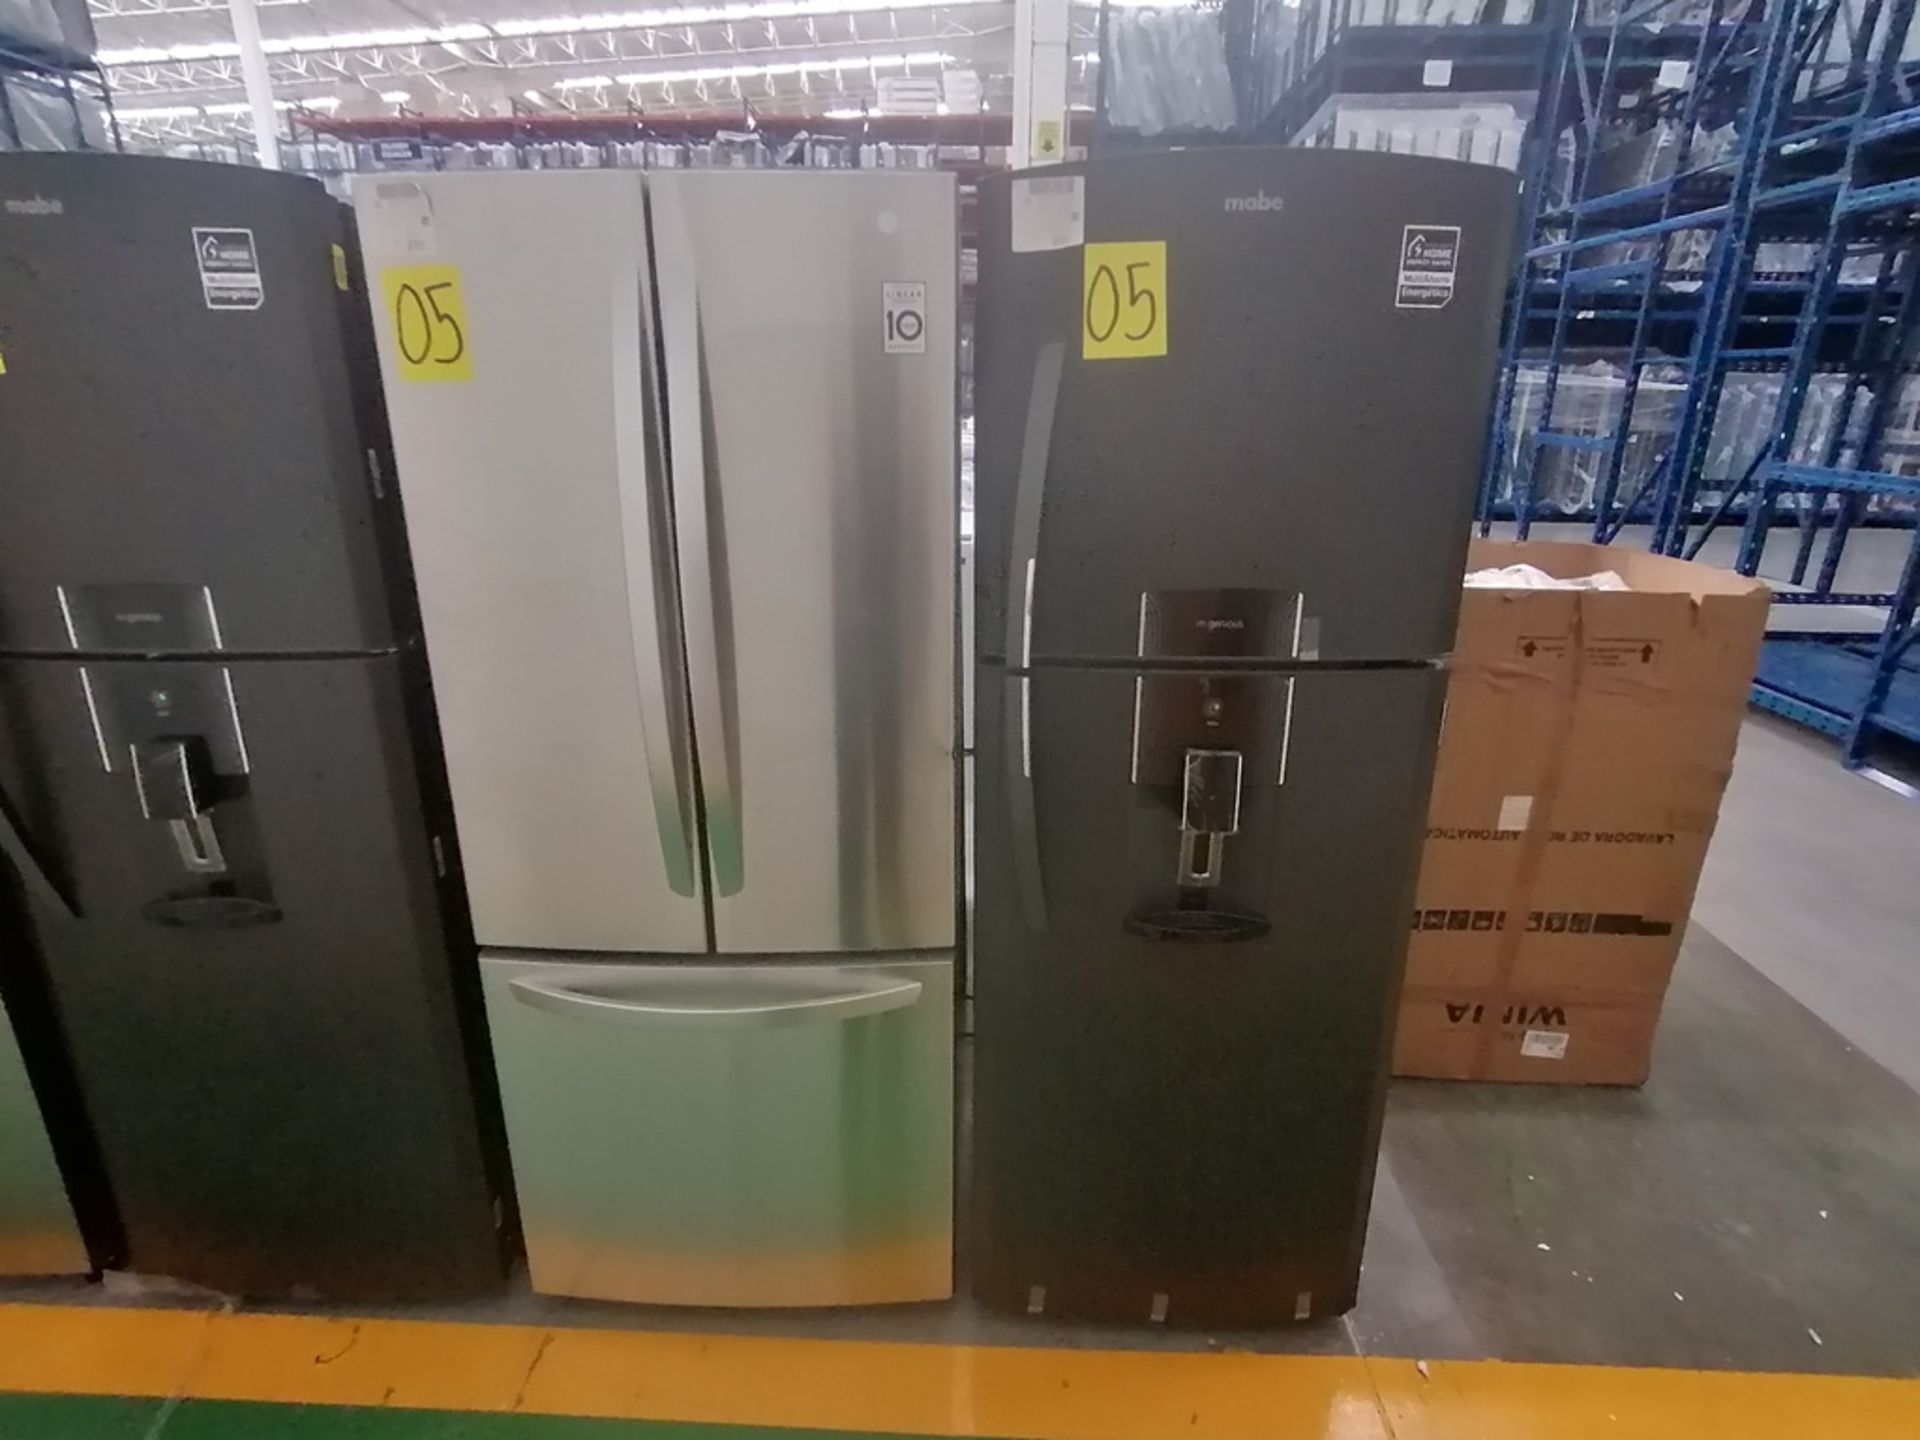 Lote de 2 refrigeradores incluye: 1 Refrigerador con dispensador de agua, Marca Mabe, Modelo RME360 - Image 3 of 15